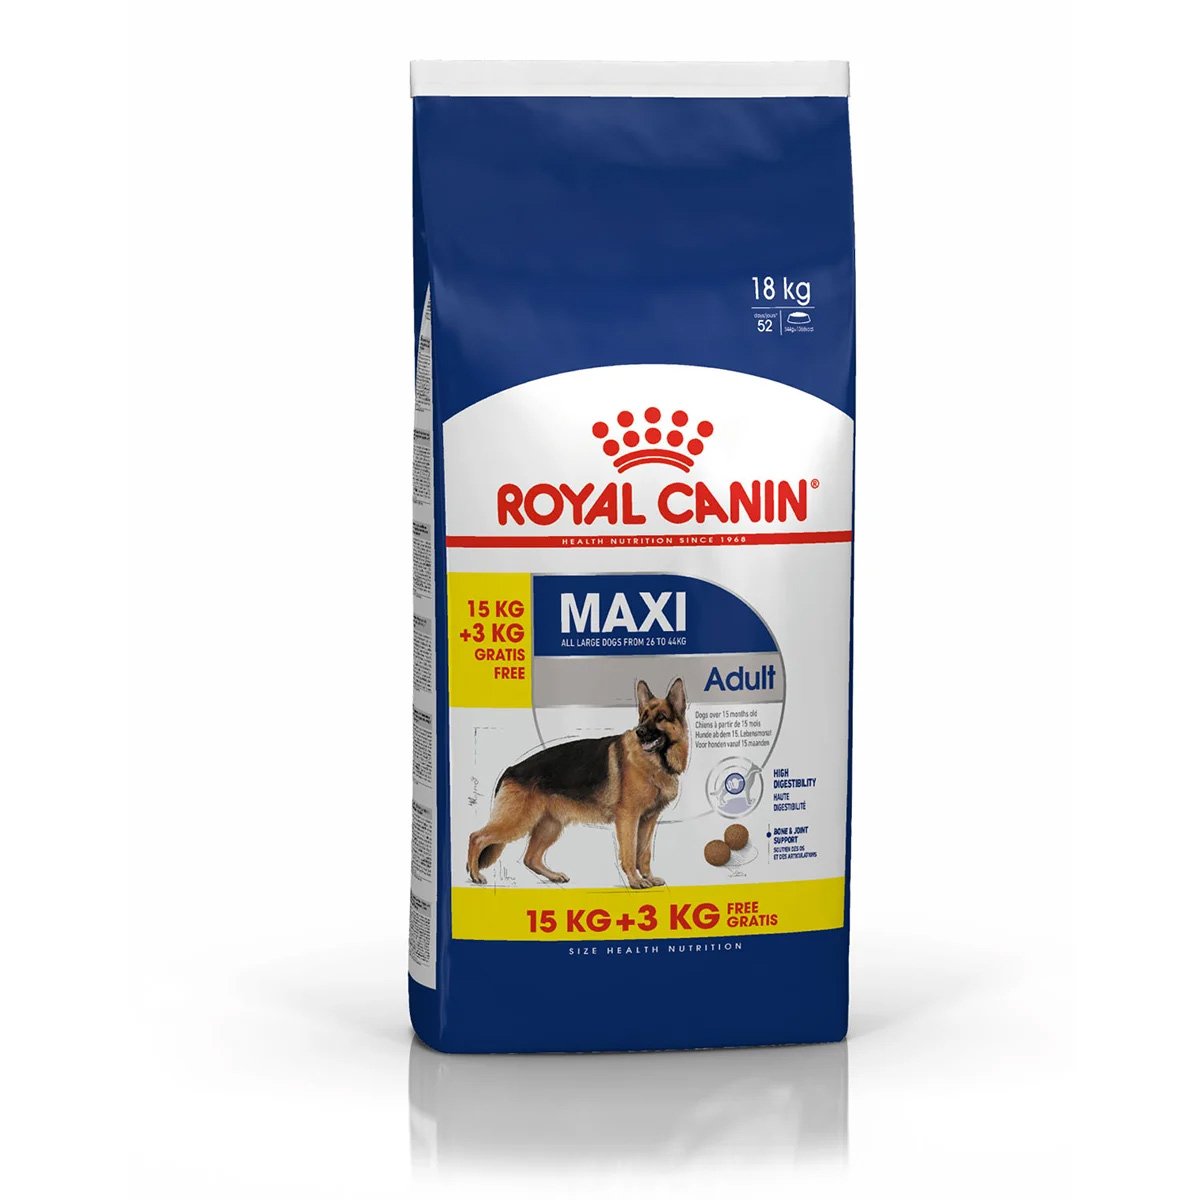 ROYAL CANIN MAXI Adult Trockenfutter für große Hunde 15kg + 3kg gratis